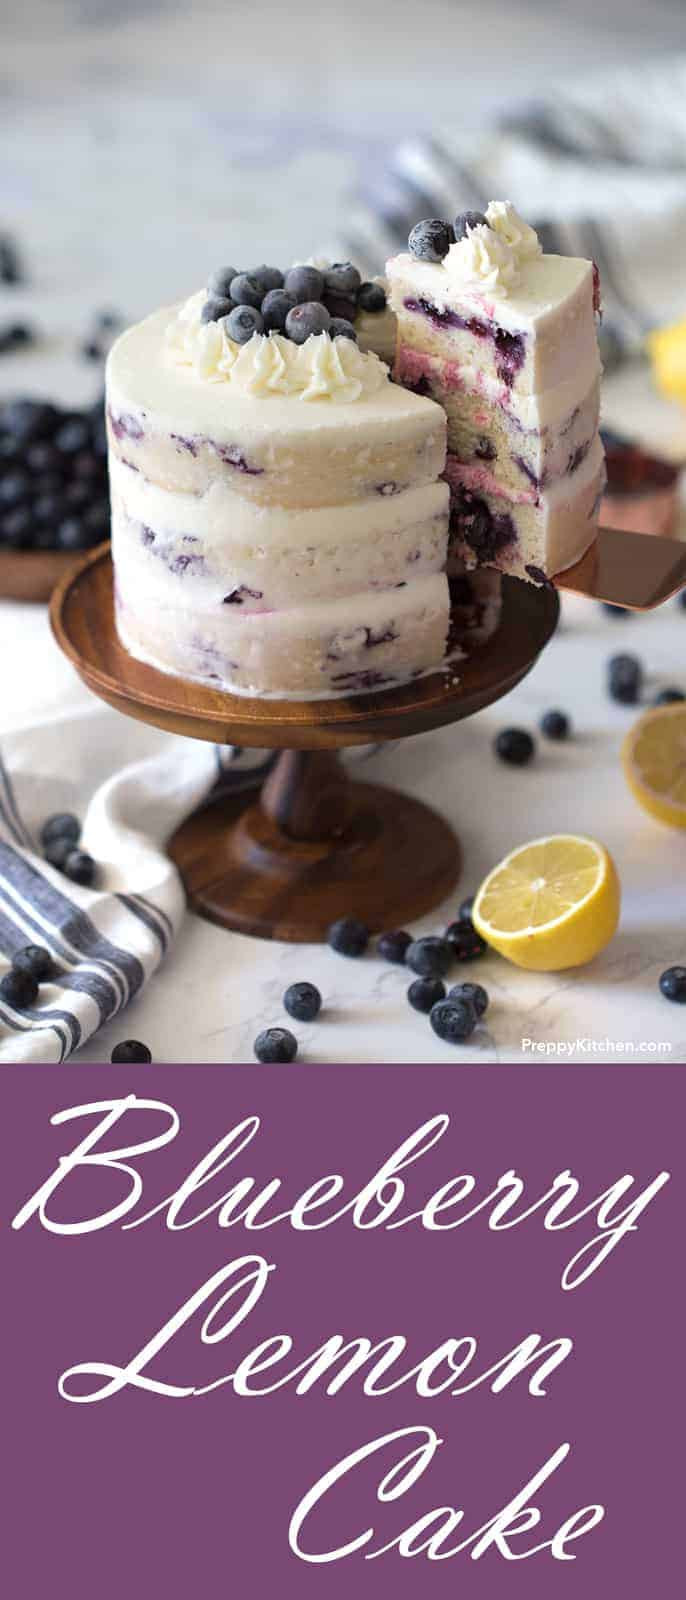 Blueberry Birthday Cake Recipe
 Lemon Blueberry Cake Preppy Kitchen